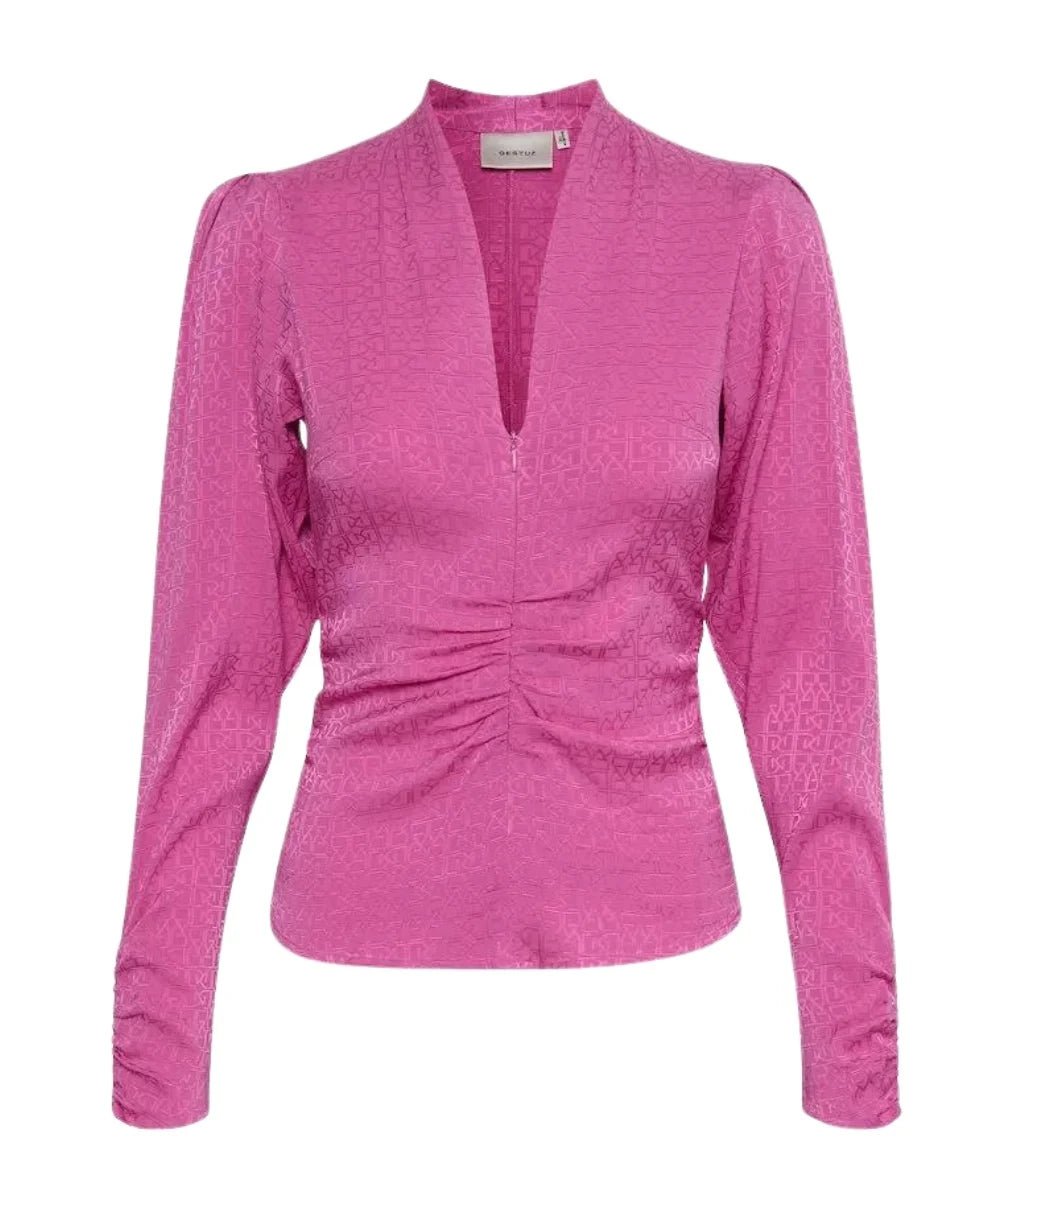 Brina Gz blouse, super pink